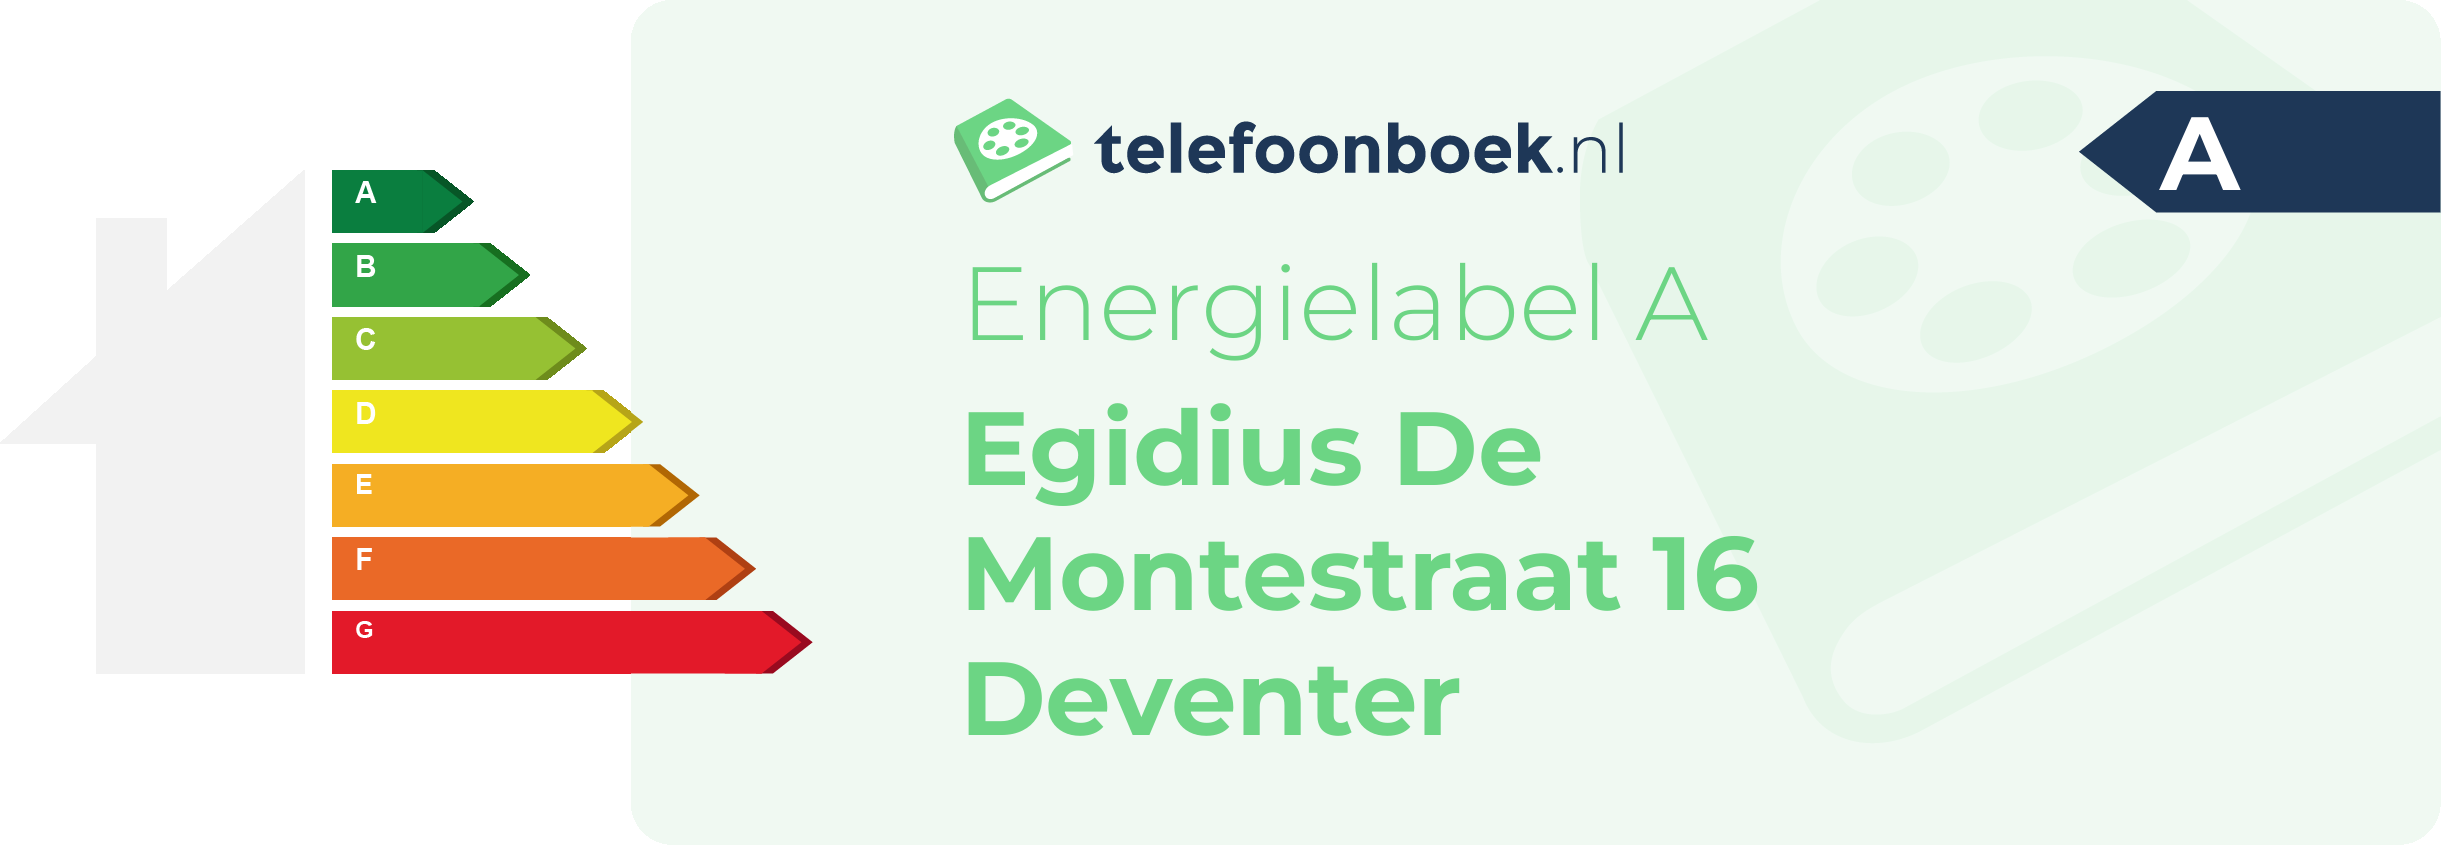 Energielabel Egidius De Montestraat 16 Deventer